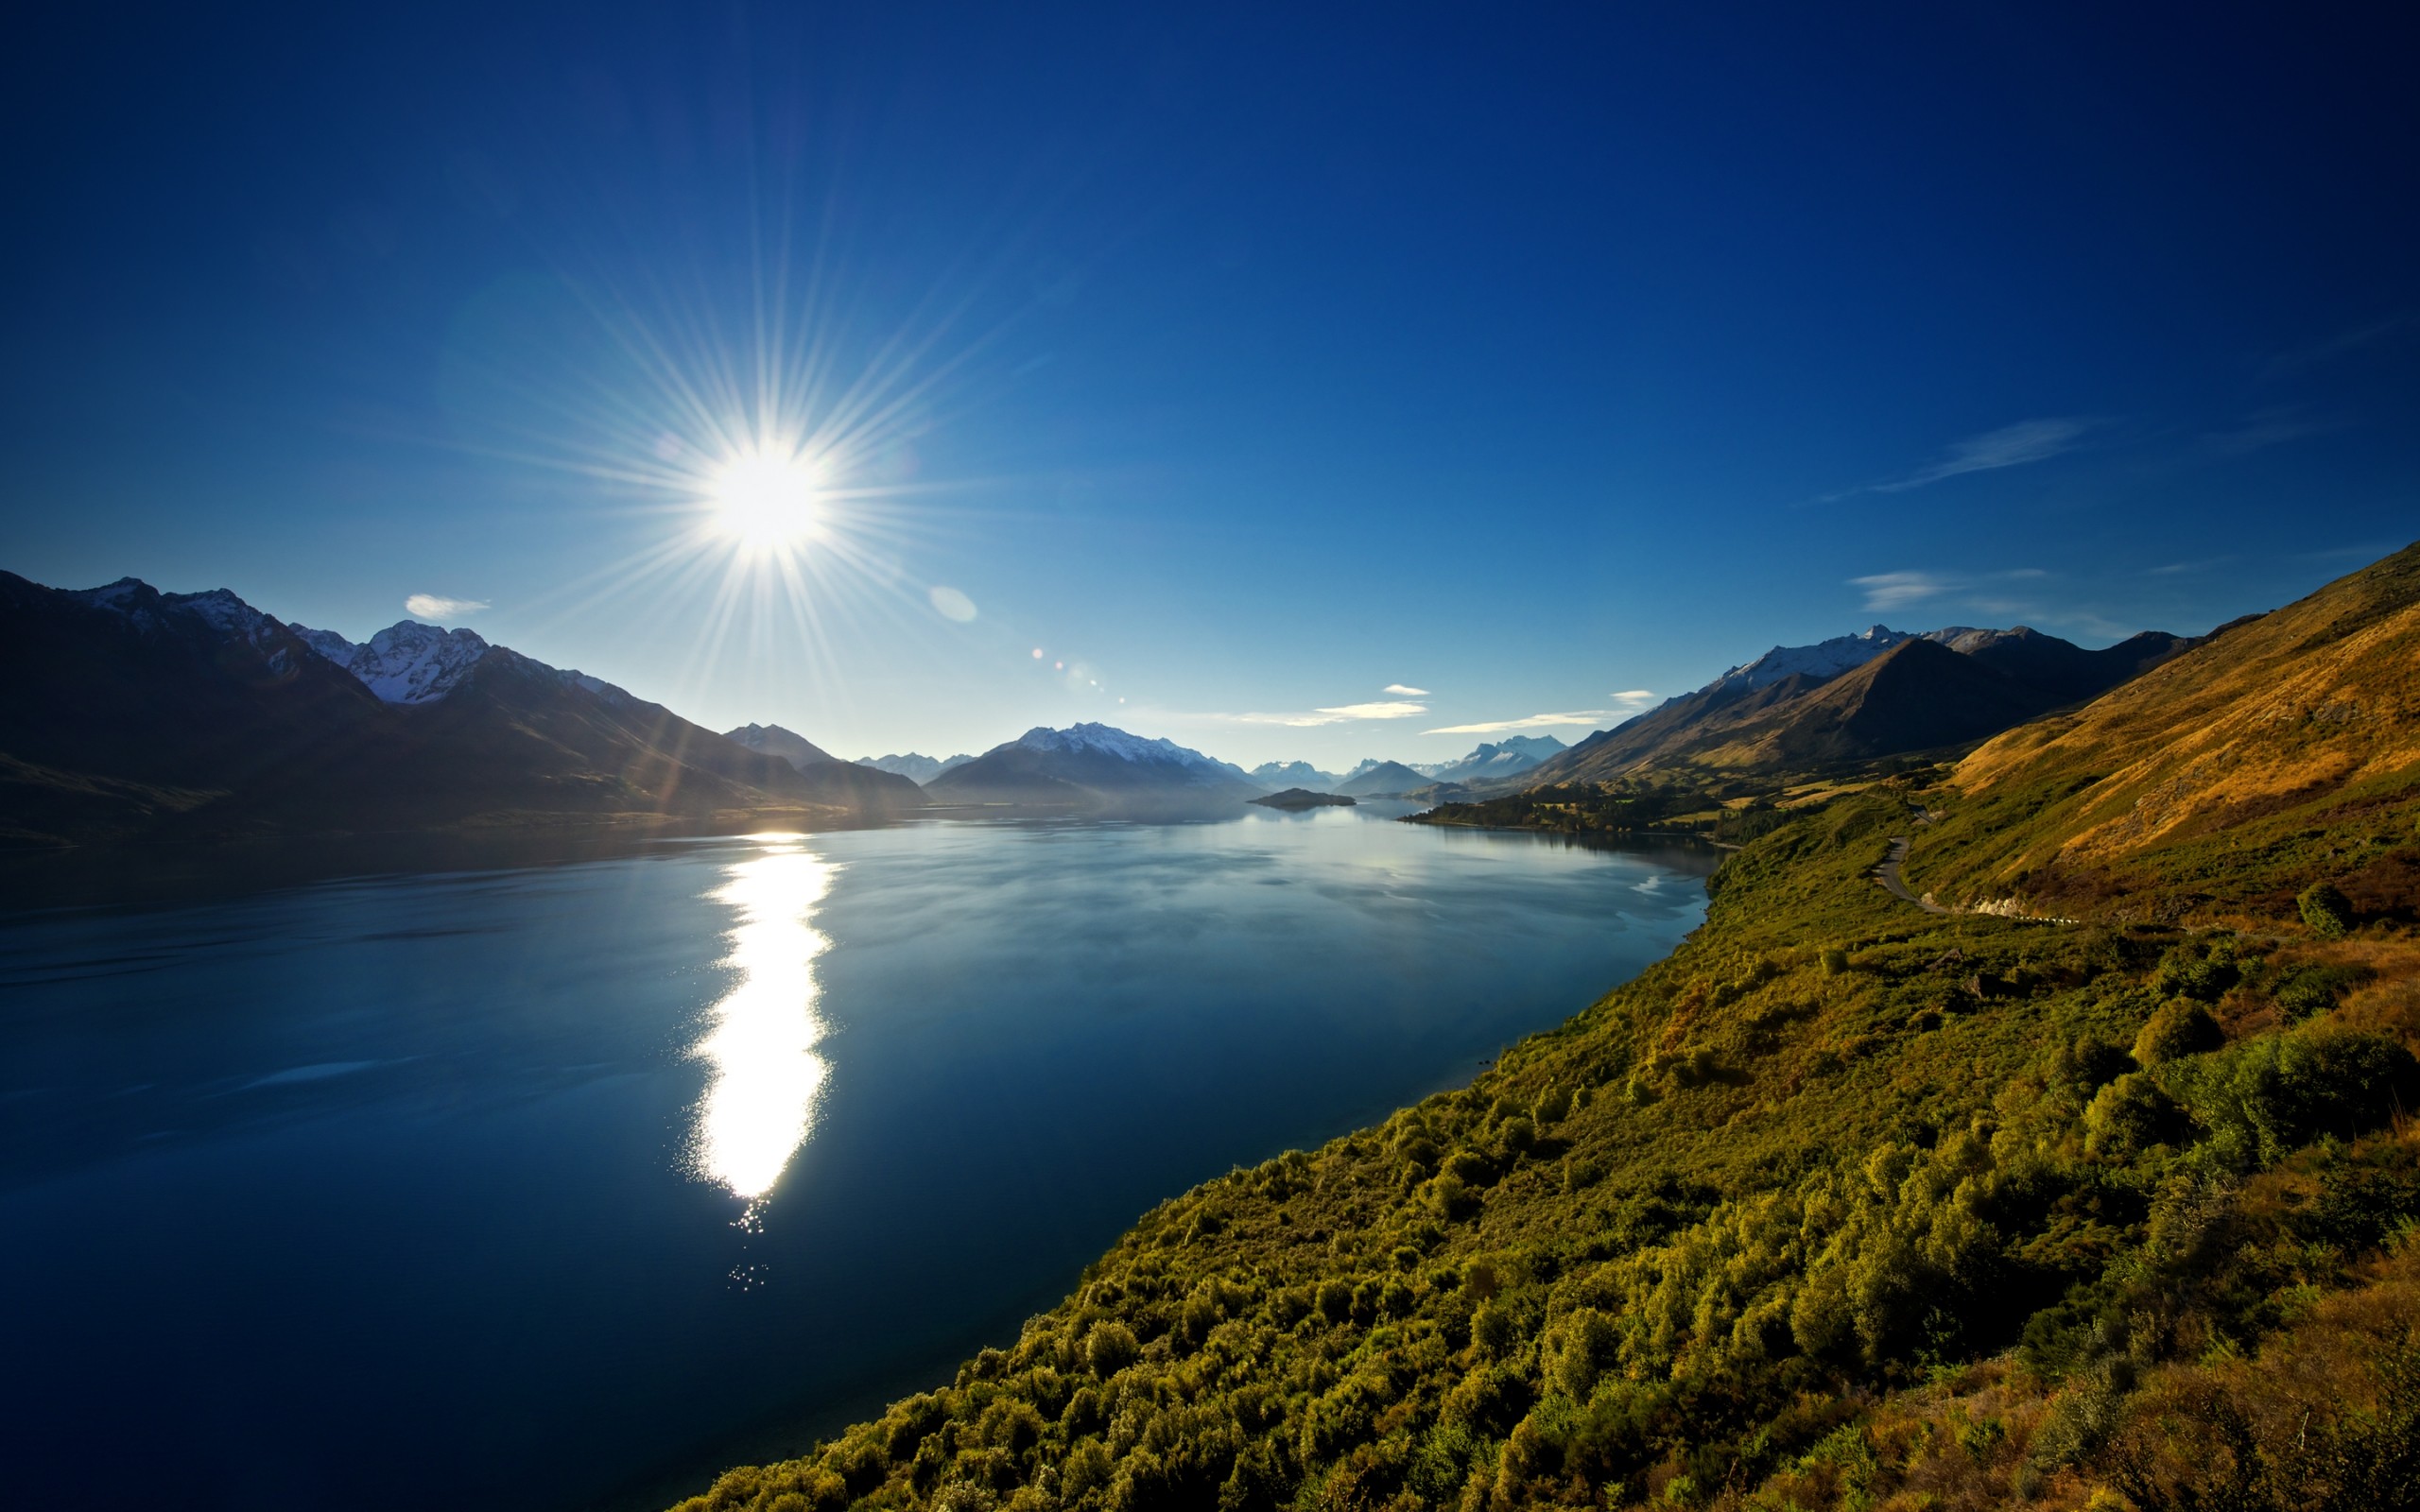 General 2560x1600 nature Lake Wakatipu lake sun rays mountains landscape New Zealand